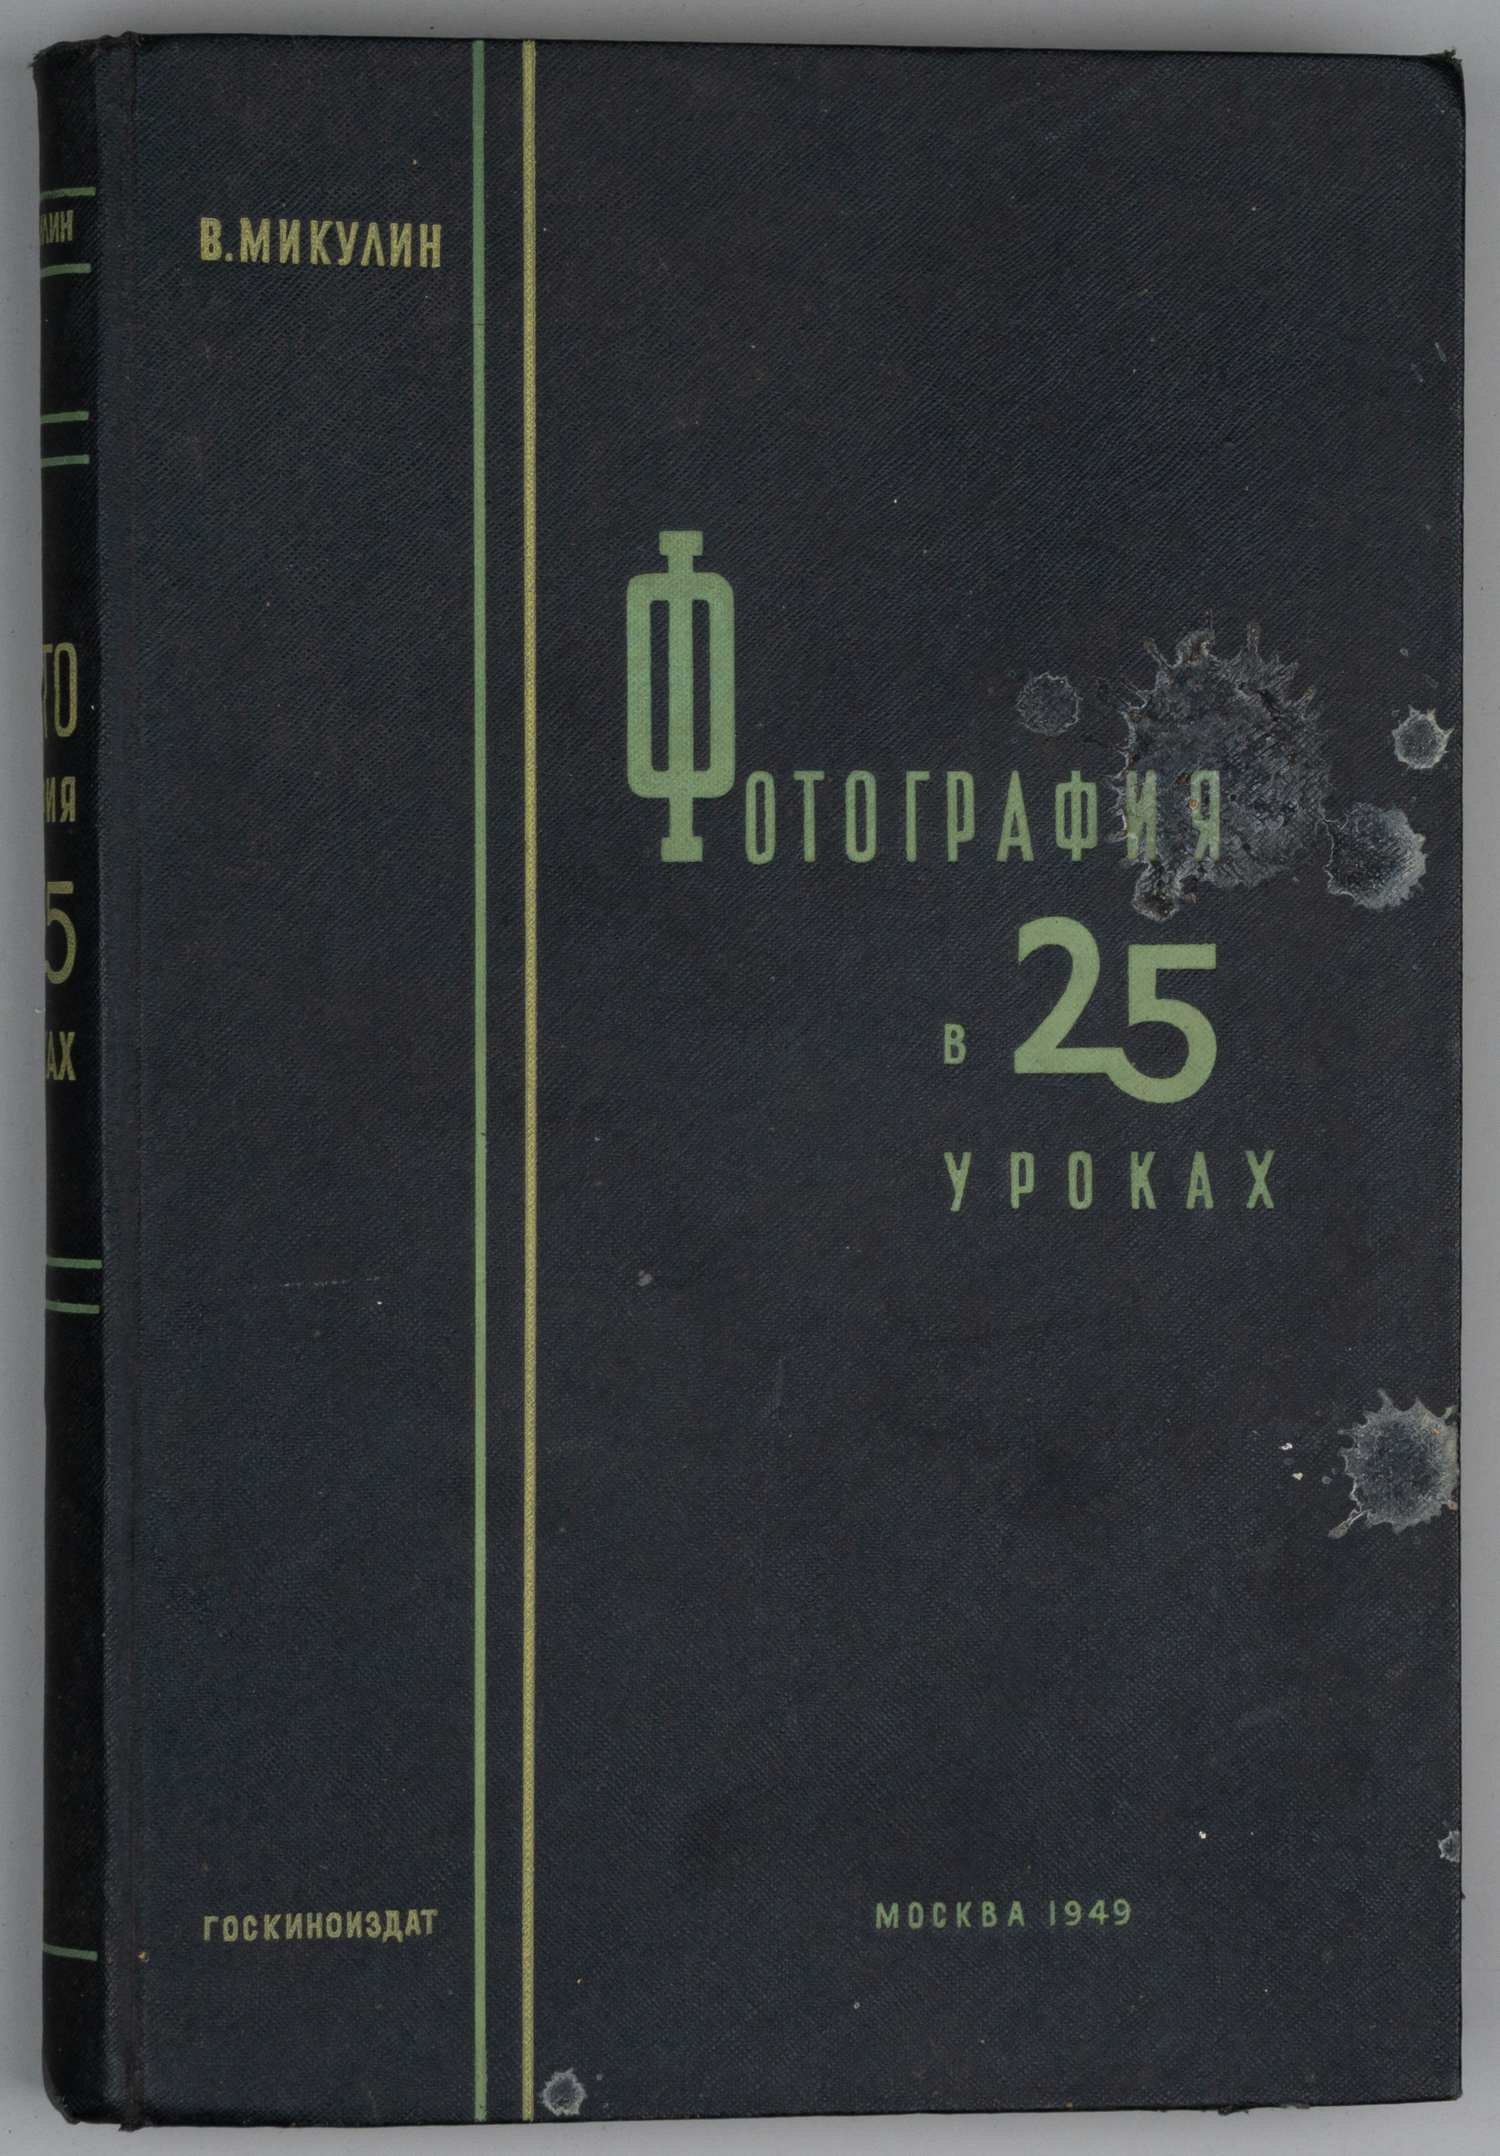 Микулин В. Фотография в 25 уроках. Практическое руководство (М., 1949).